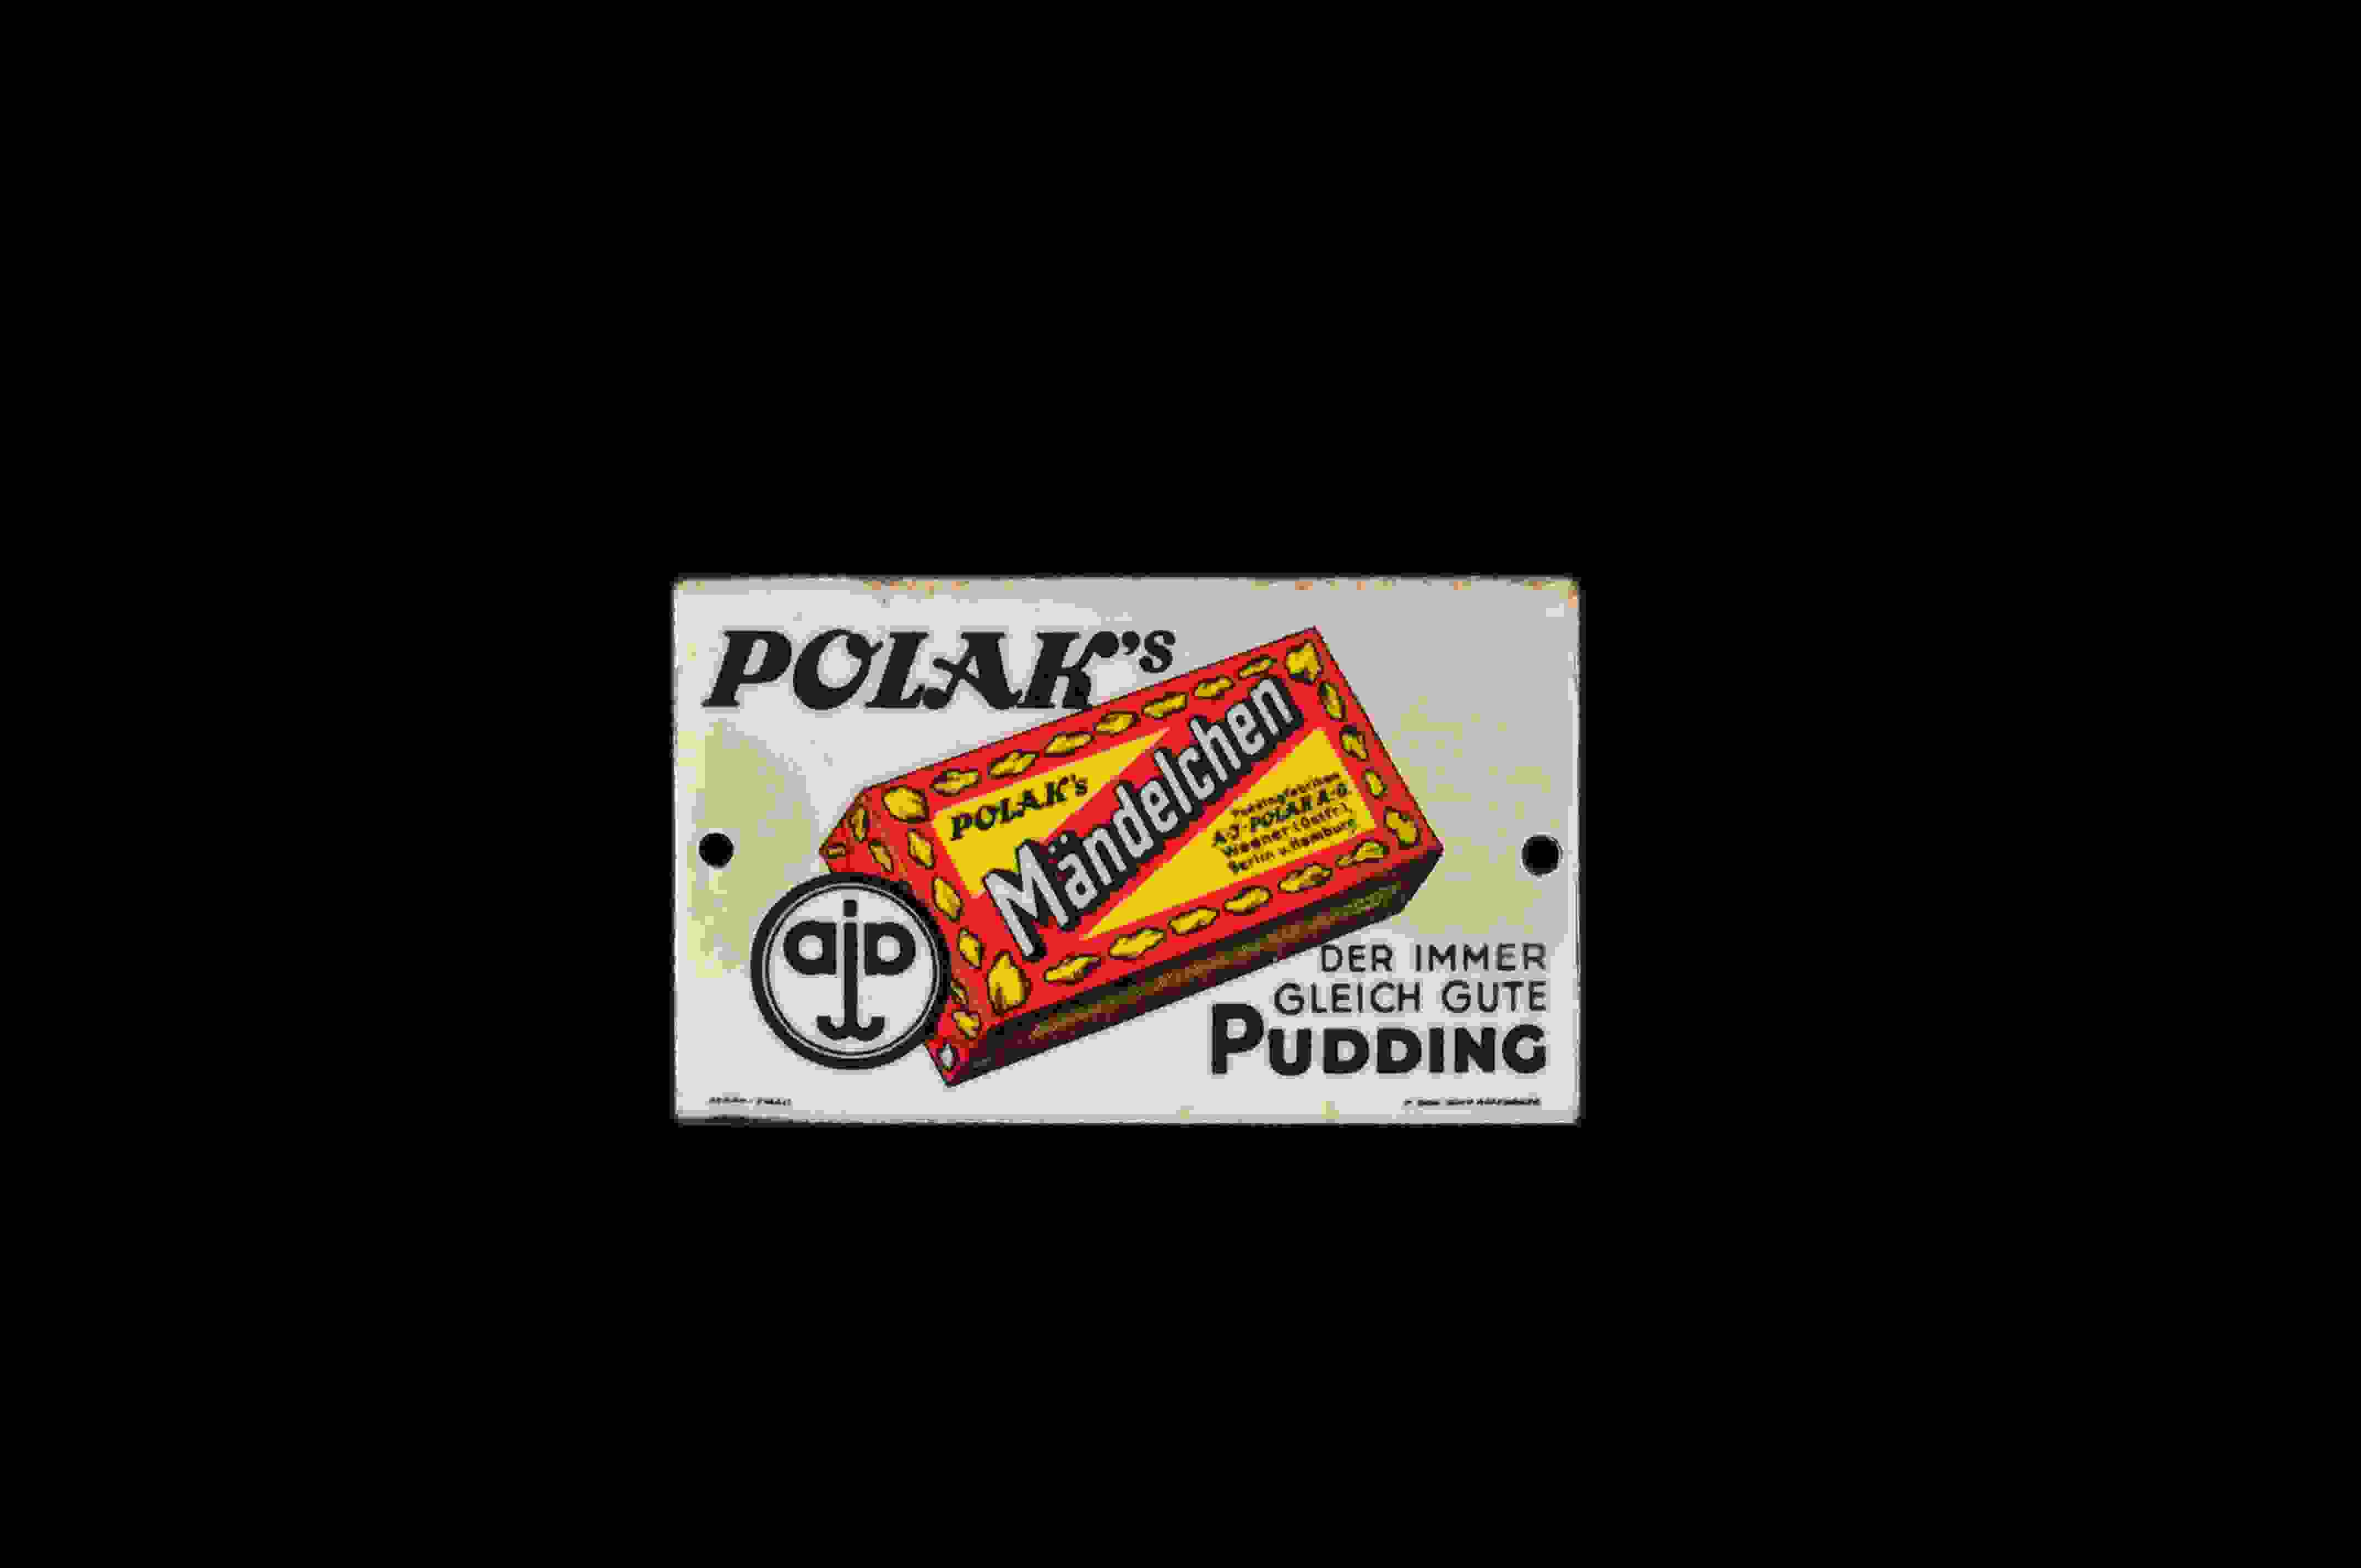 Polak's Mändelchen Pudding 